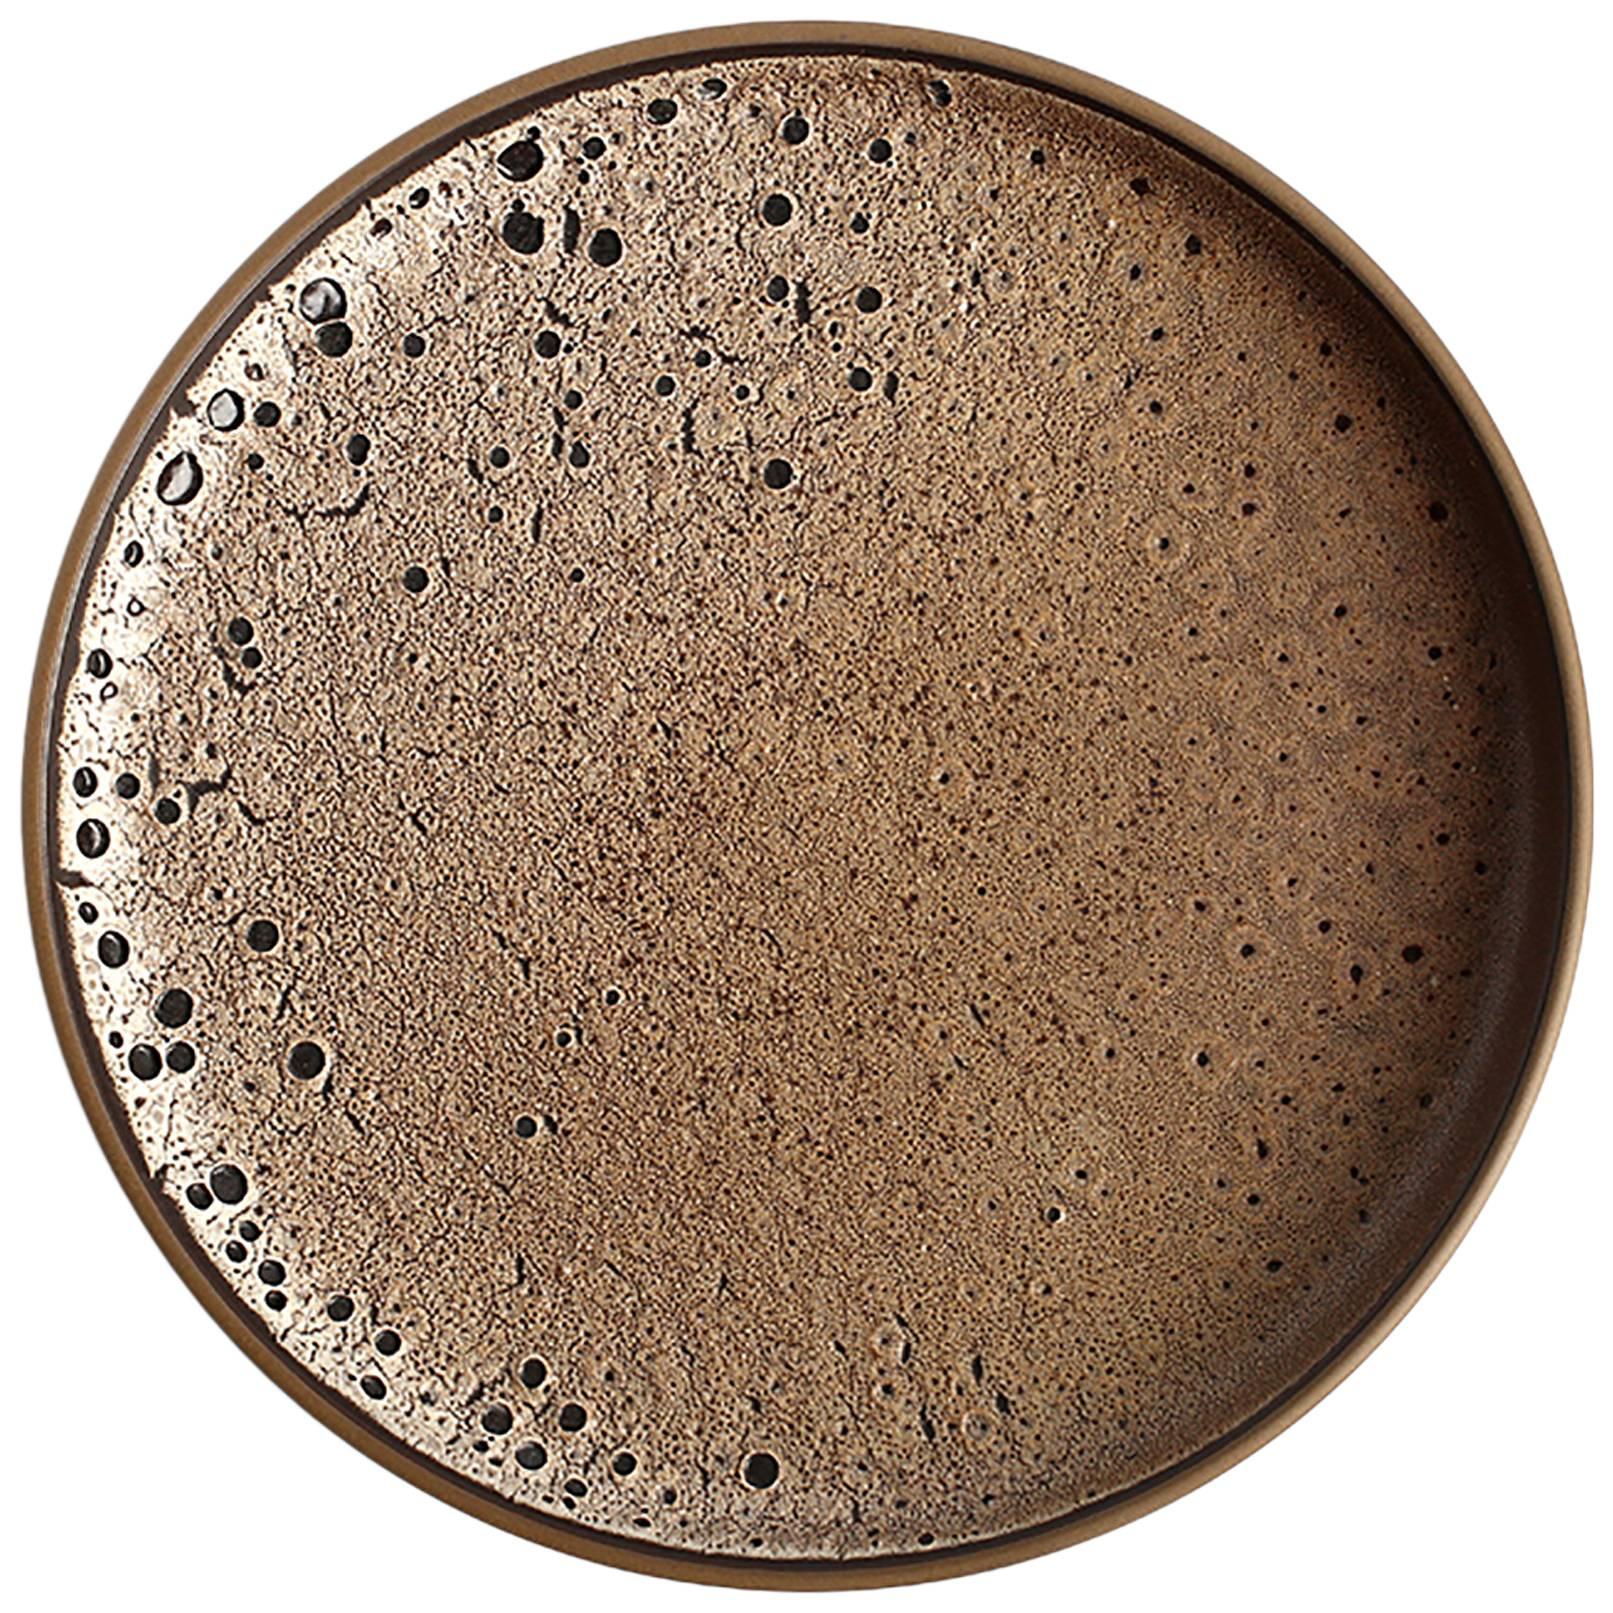 Platter from Heath's "Alchemy" Design Series with Unique Textured Glaze